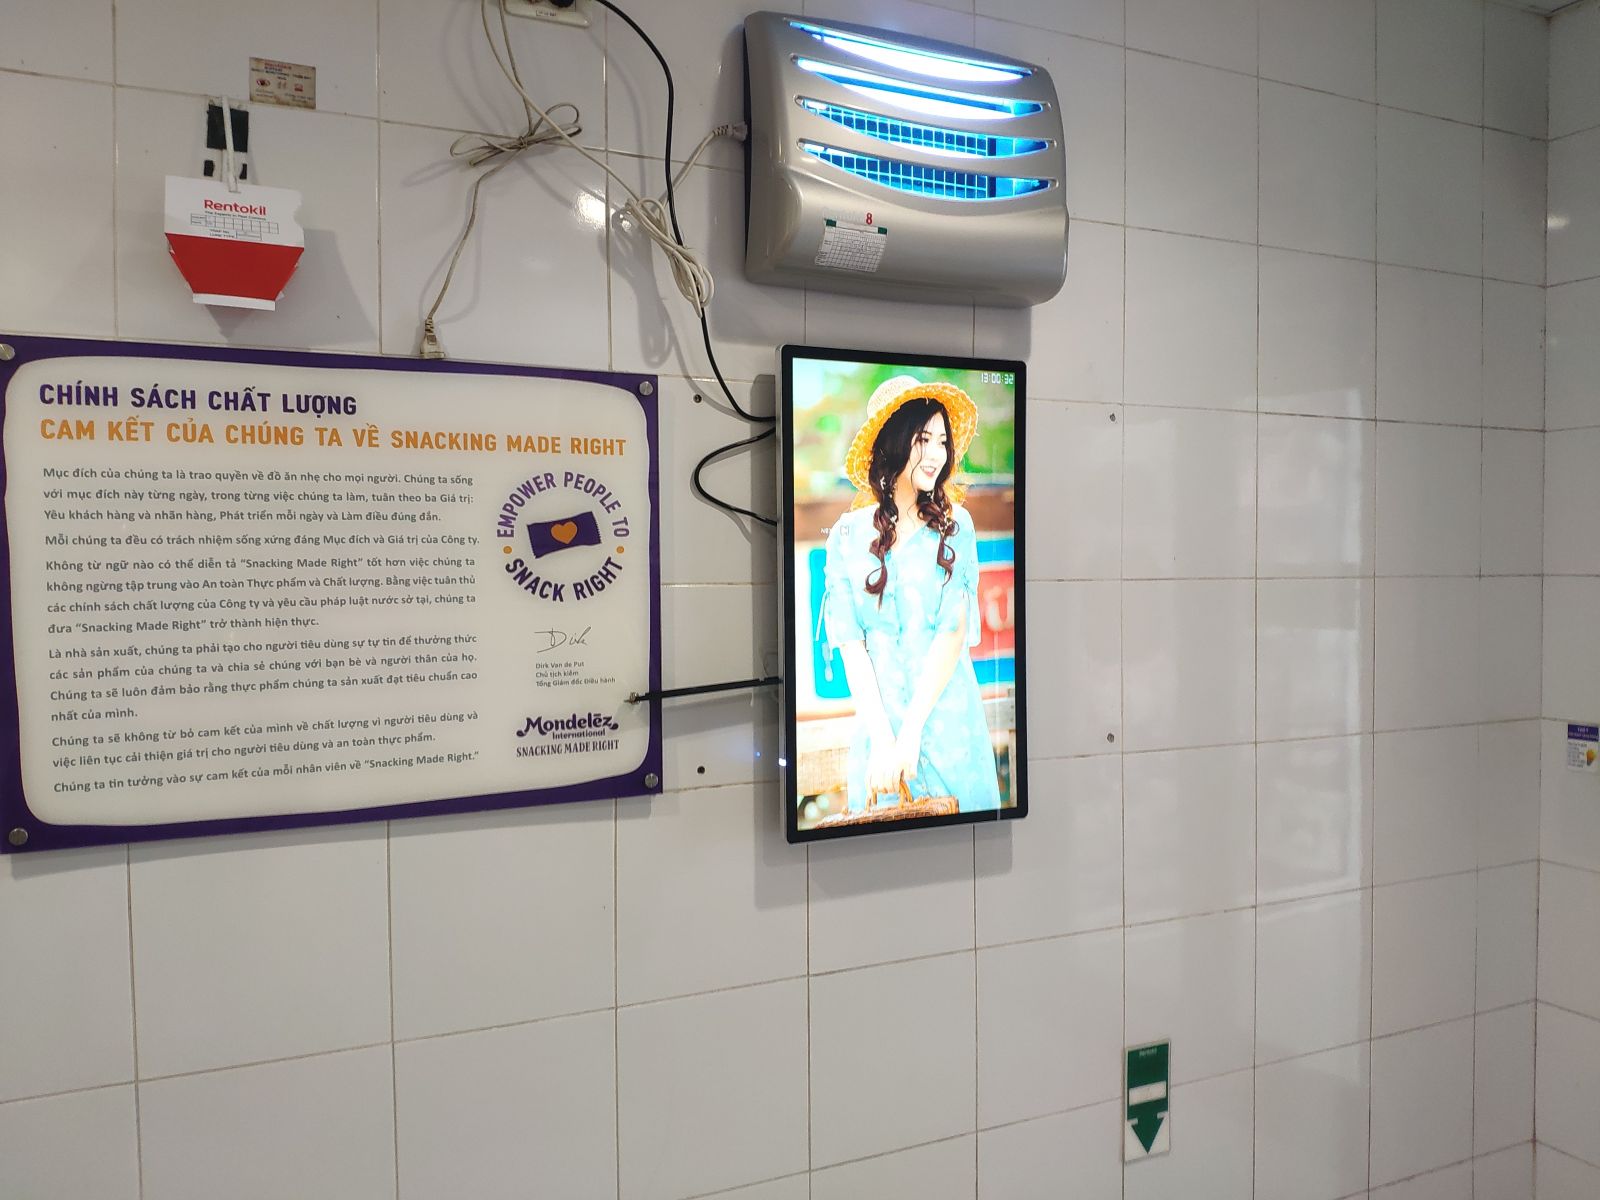 LẮP đặt 4 LCD 32 inch quảng cáo cho CTY TNHH MỘT THÀNH VIÊN KINH ĐÔ MIỀN BẮC -  Tỉnh Hưng yên.